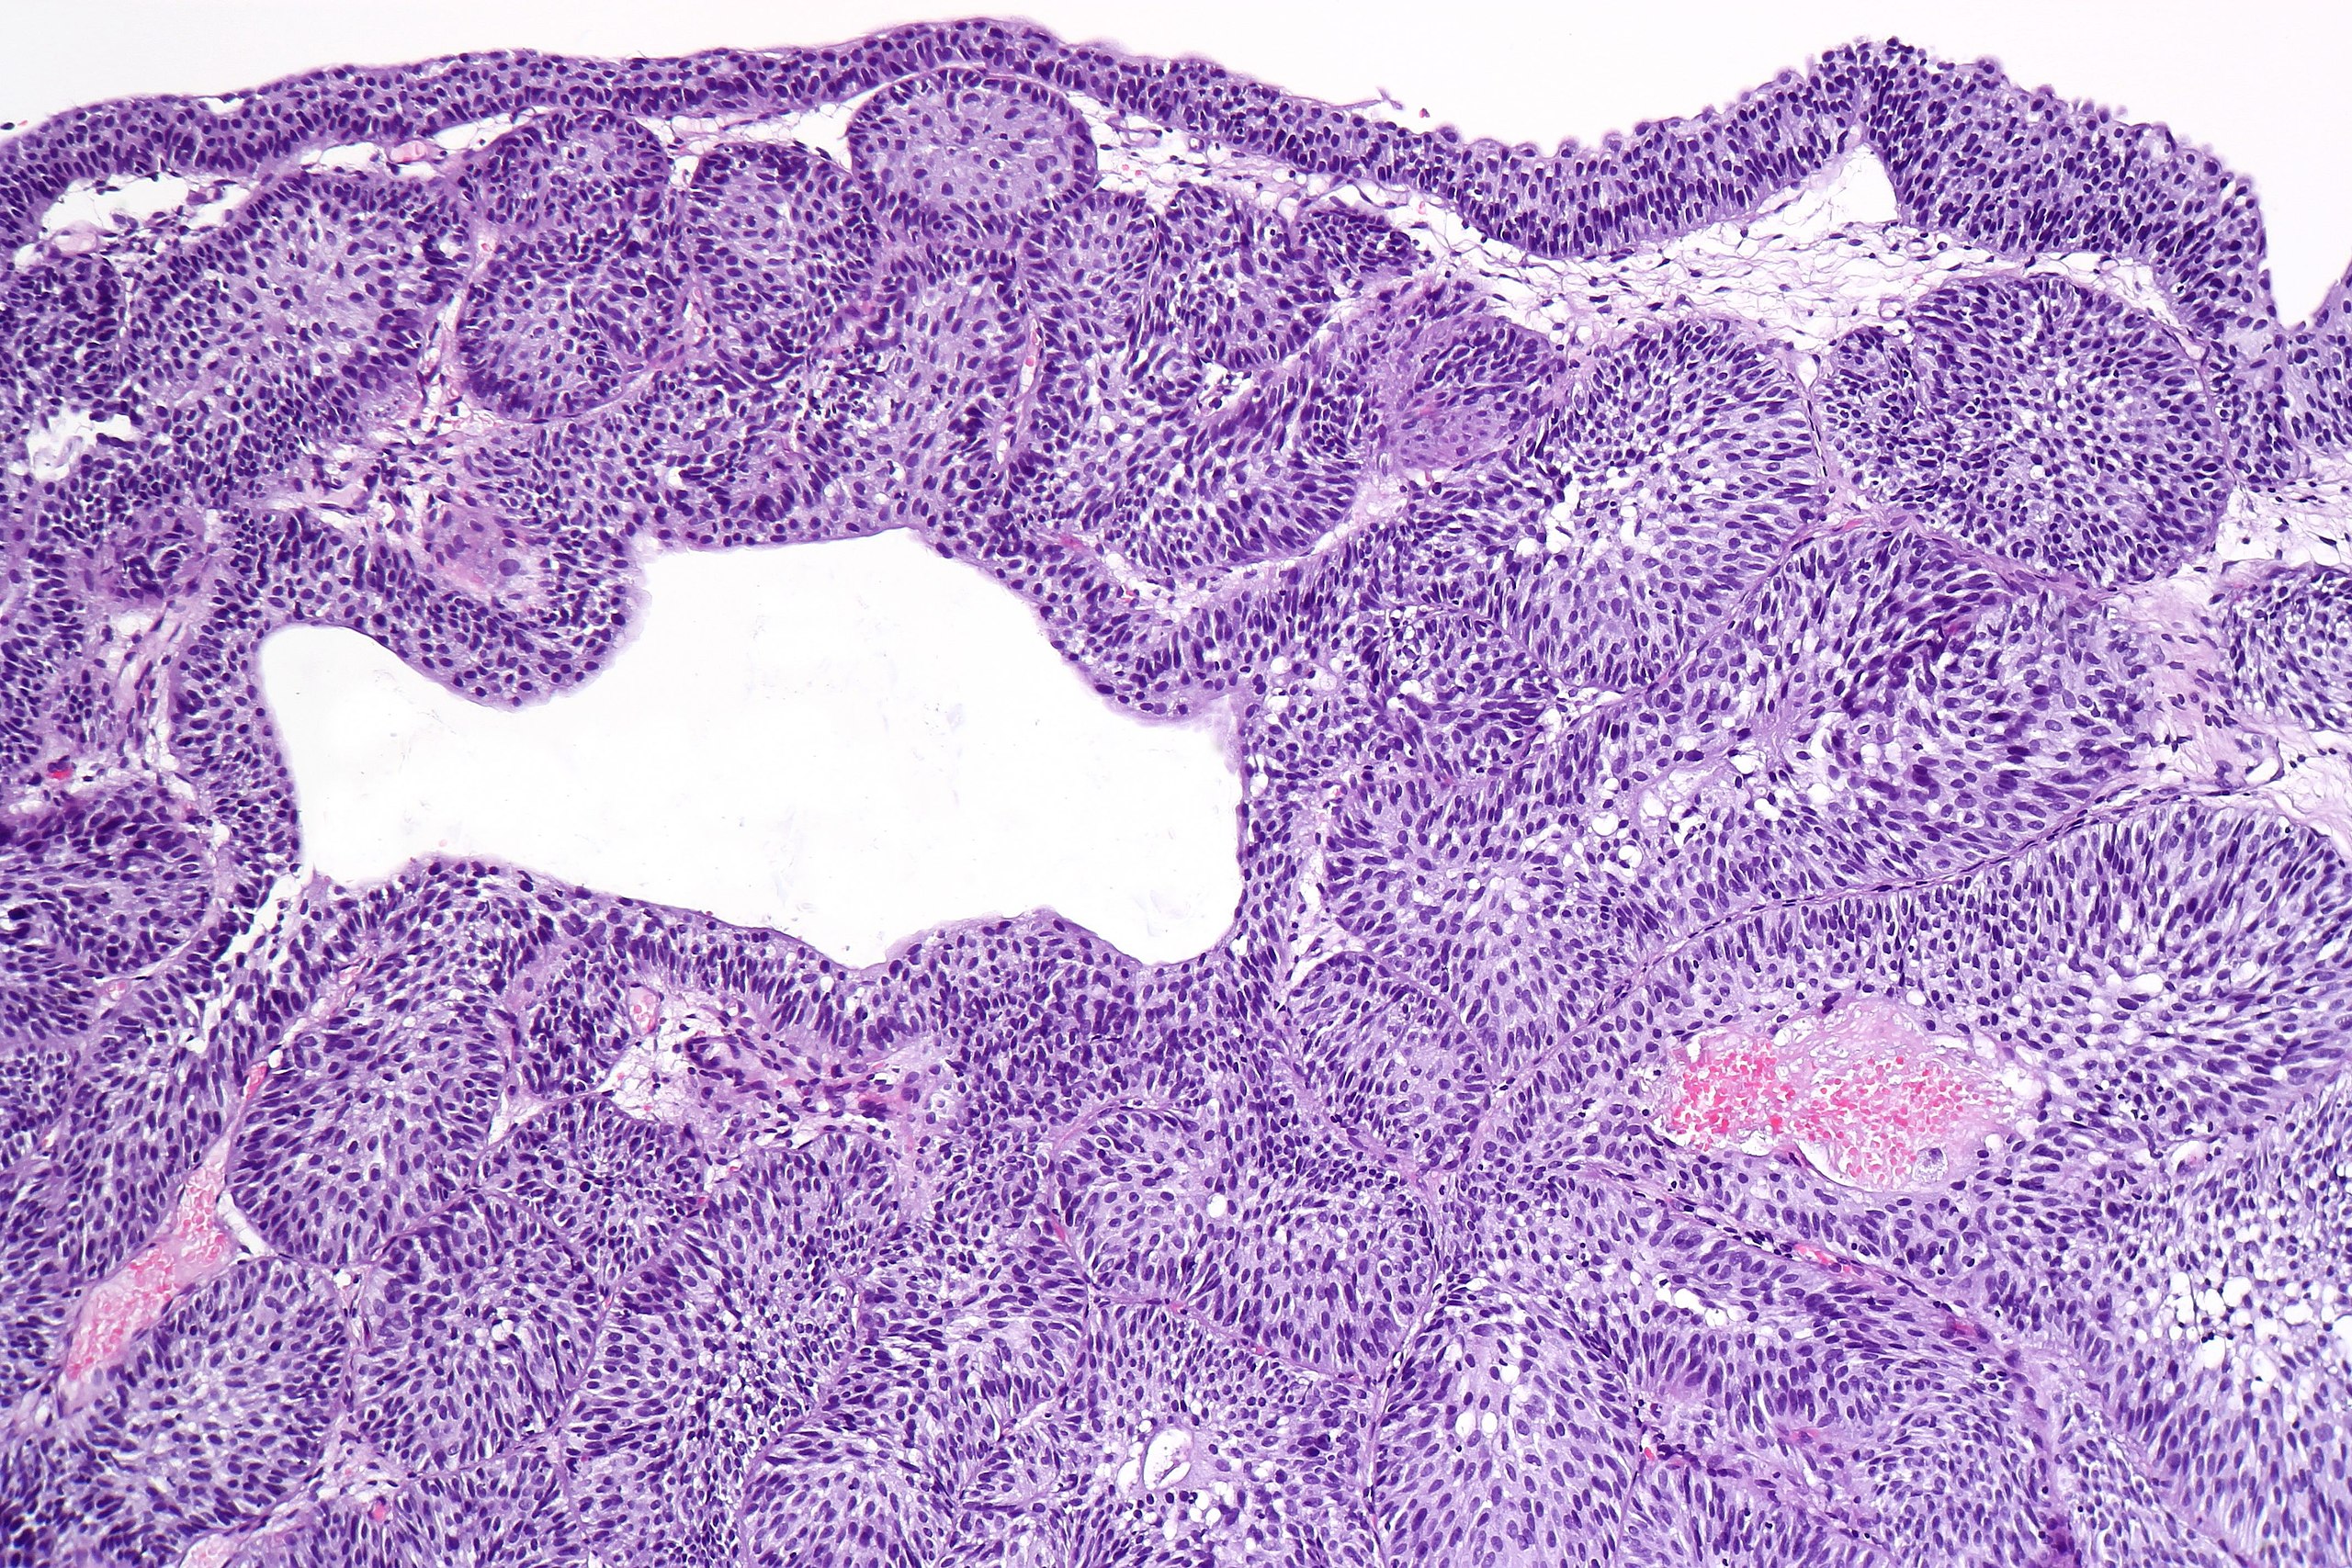 inverted urothelial papilloma pathology